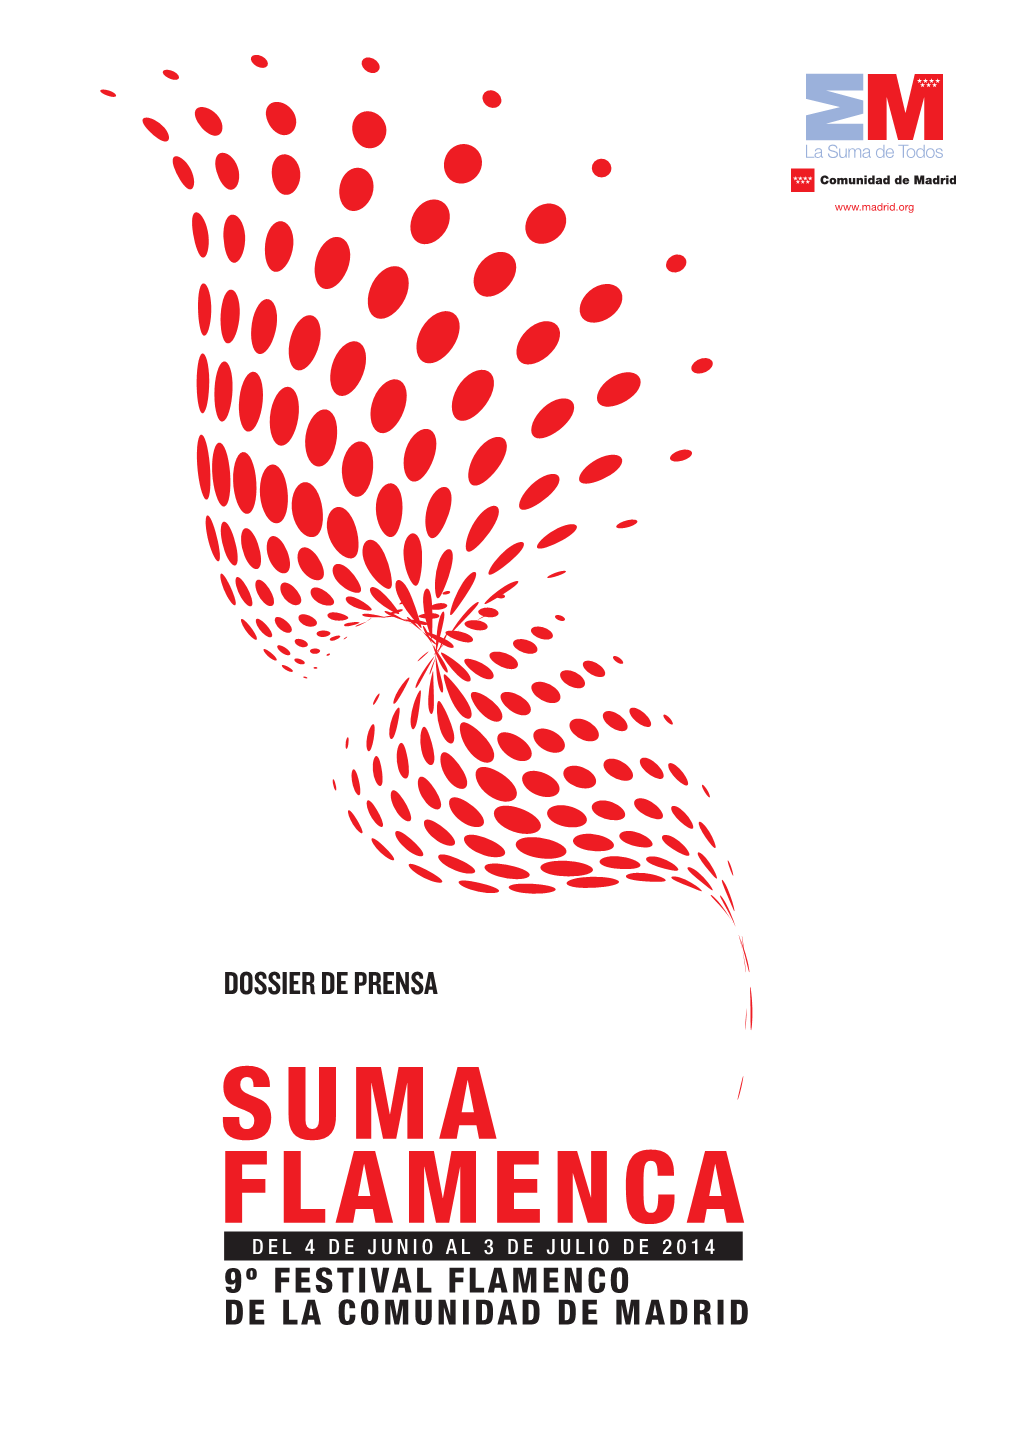 Suma Flamenca